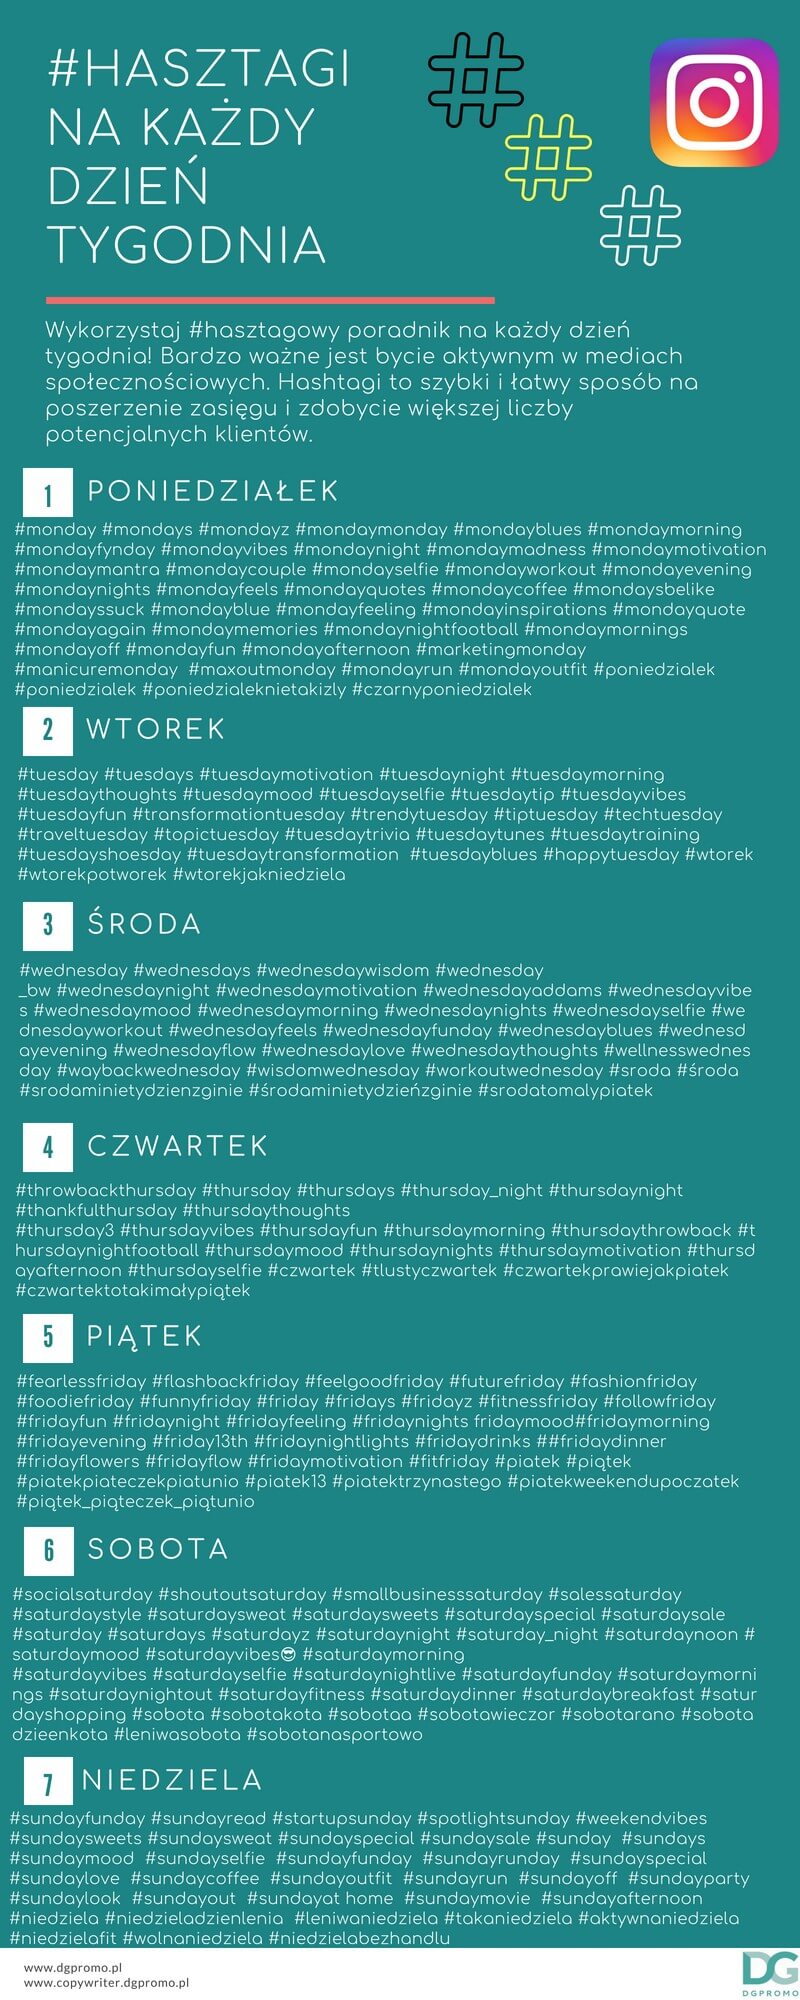 hasztagi-infografika-dgpromo